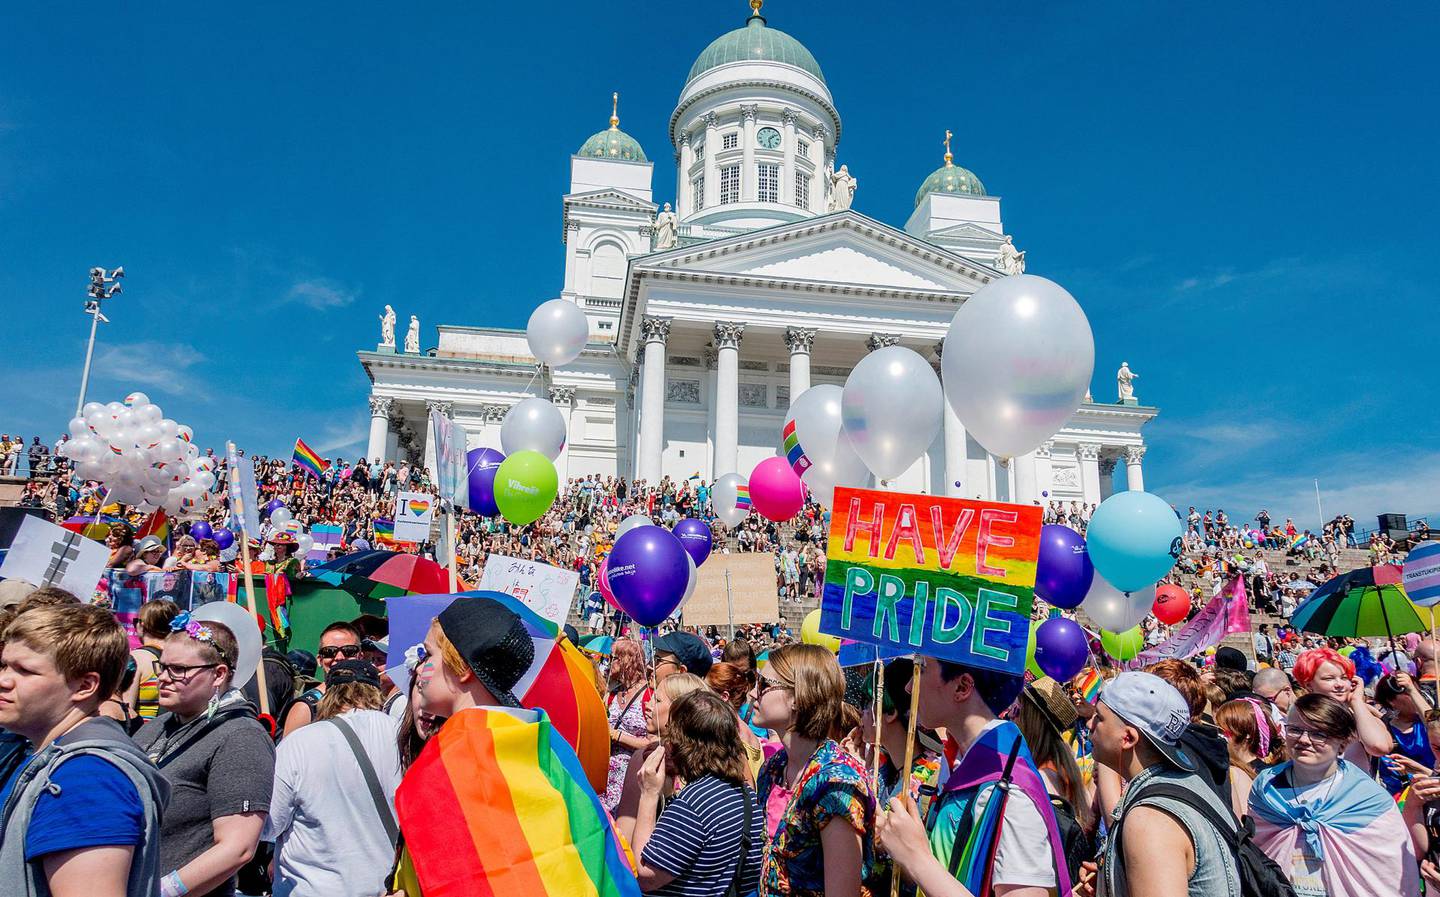 I 2019 skårer Helsinki høyt innenfor bærekraft, tilgjengelighet, digitalisering, kulturarv og kreativitet. Her fra Gay Pride i 2016, med byens domkirke i bakgrunnen. FOTO: JENS SØLVBERG/NTB SCANPIX